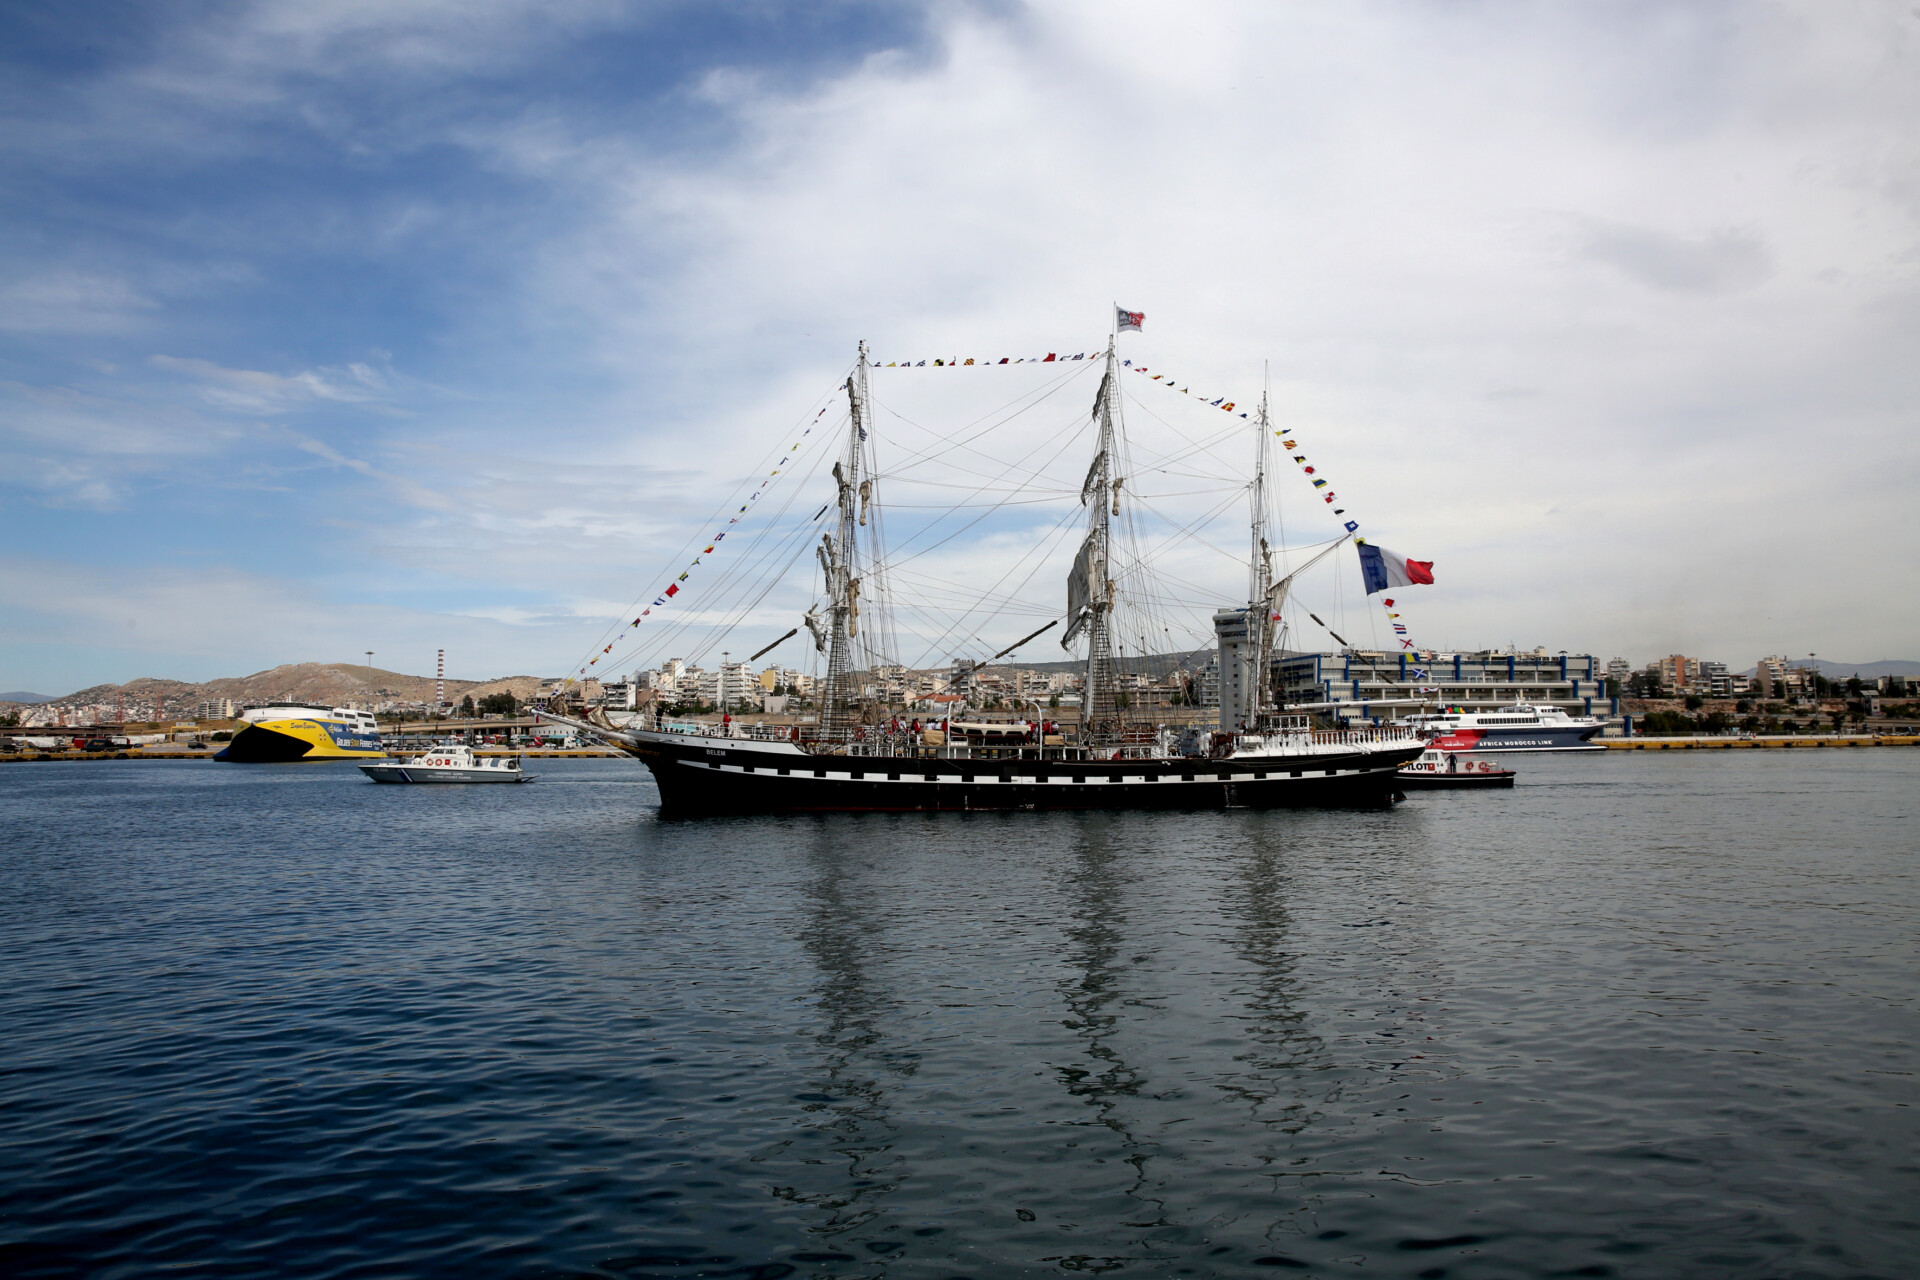 Το ιστορικό τρικάταρτο ιστιοφόρο Belem, το οποίο θα μεταφέρει την Ολυμπιακή Φλόγα στο λιμάνι της Μασσαλίας για τους Ολυμπιακούς Αγώνες "Παρίσι 2024", αναχωρεί από το λιμάνι του Πειραιά © ΑΠΕ-ΜΠΕ/Αλέξανδρος Μπελτές